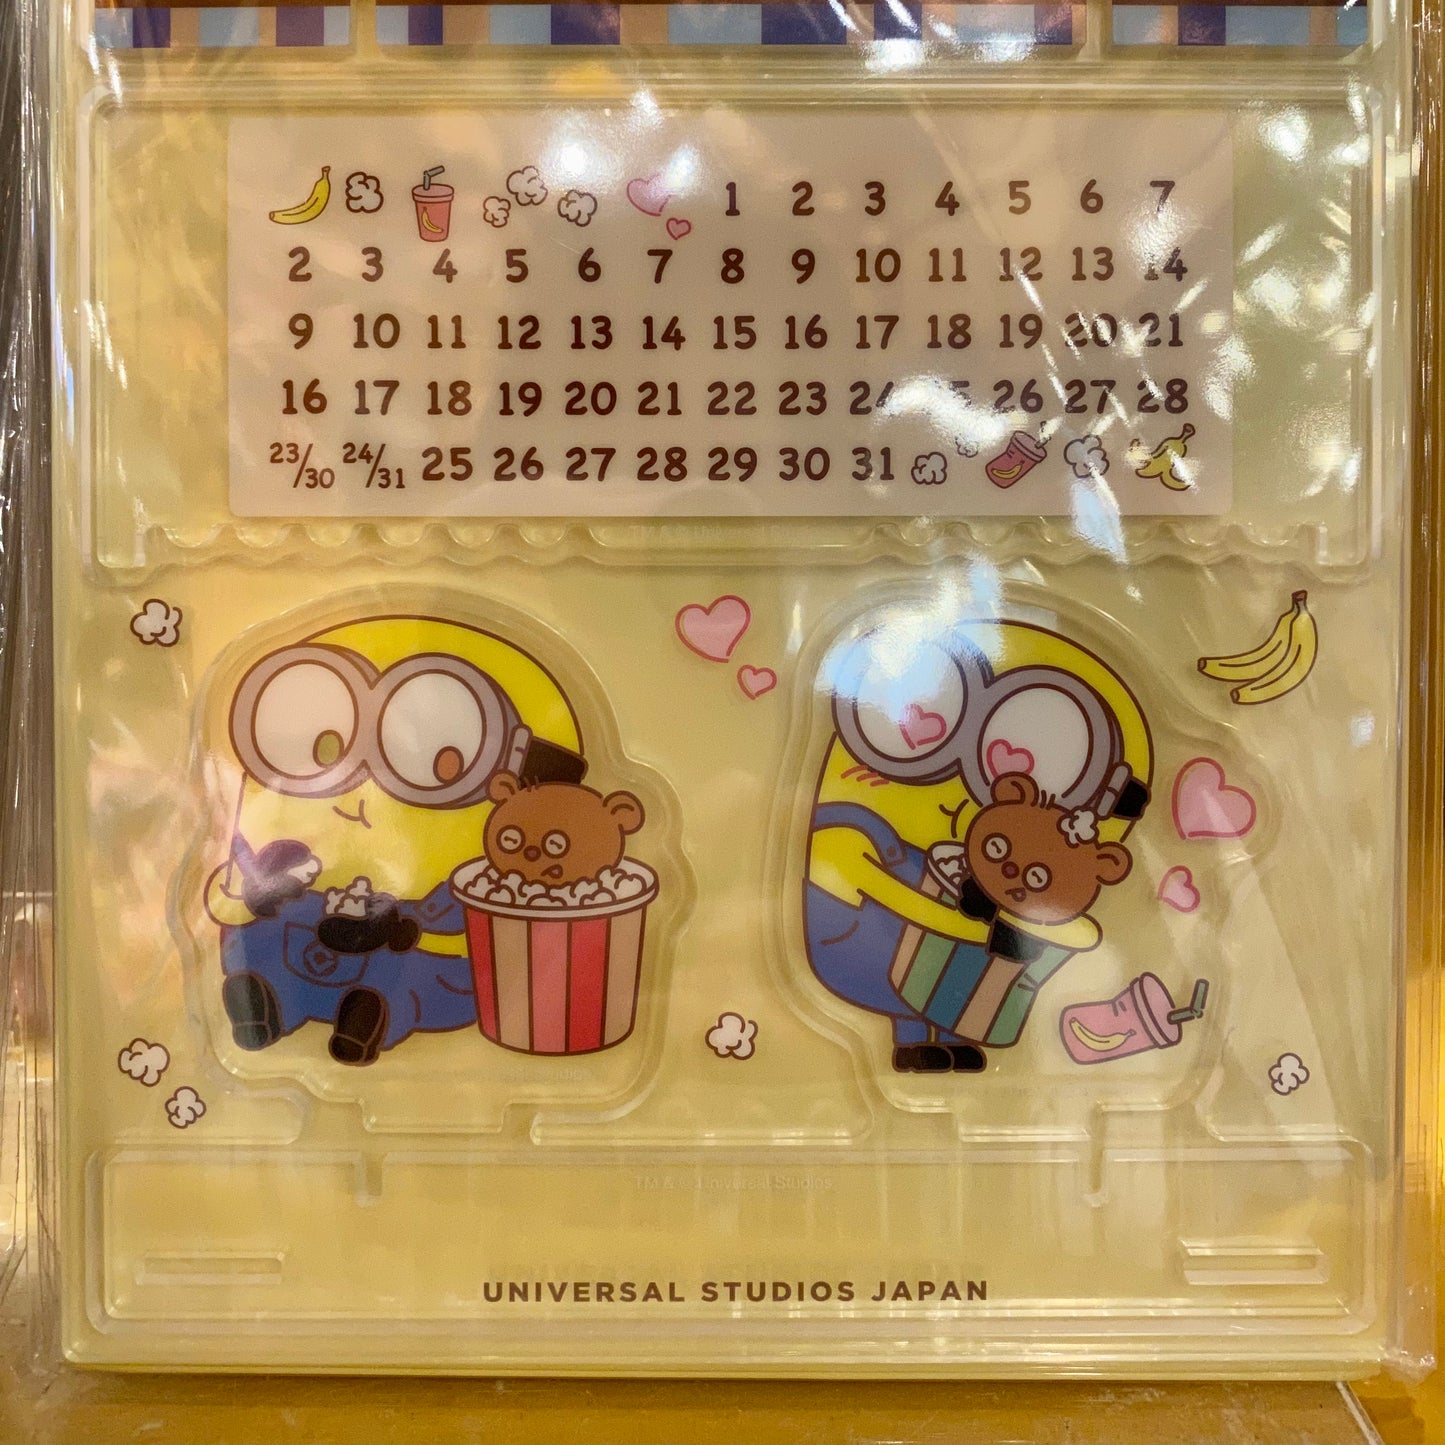 【Order】USJ Minions Bob & Tim Popcorn Series Stationery - Perpetual Calendar